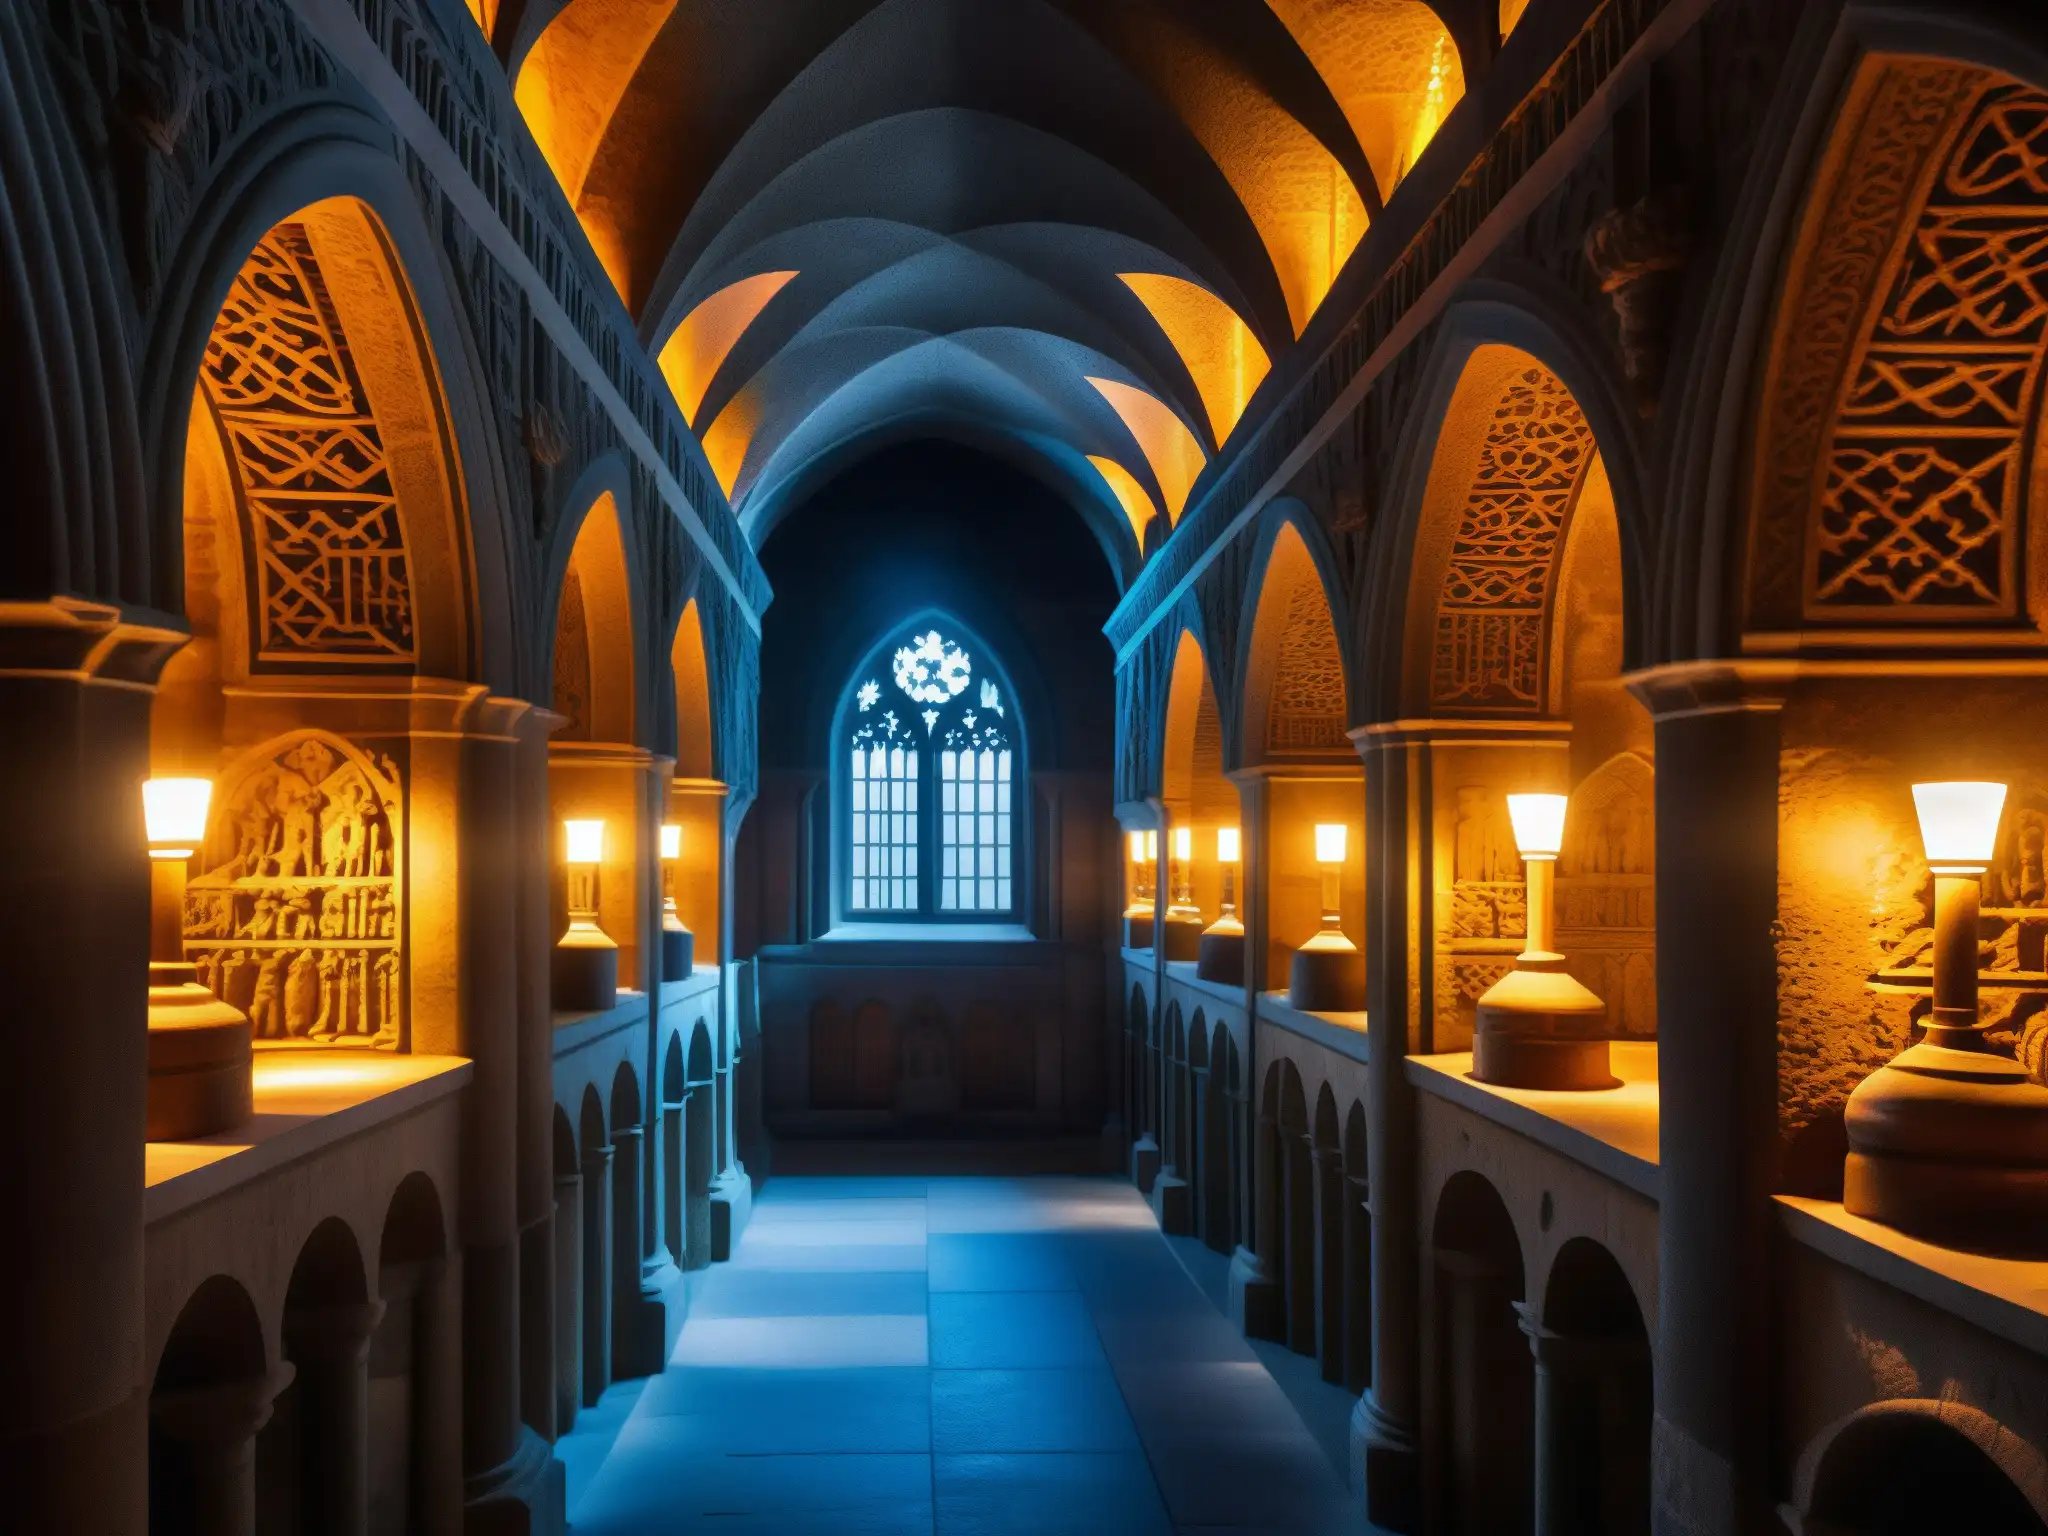 Detalle de la intrincada arquitectura y tumbas reales en la misteriosa cripta de la familia real danesa en la catedral de Roskilde